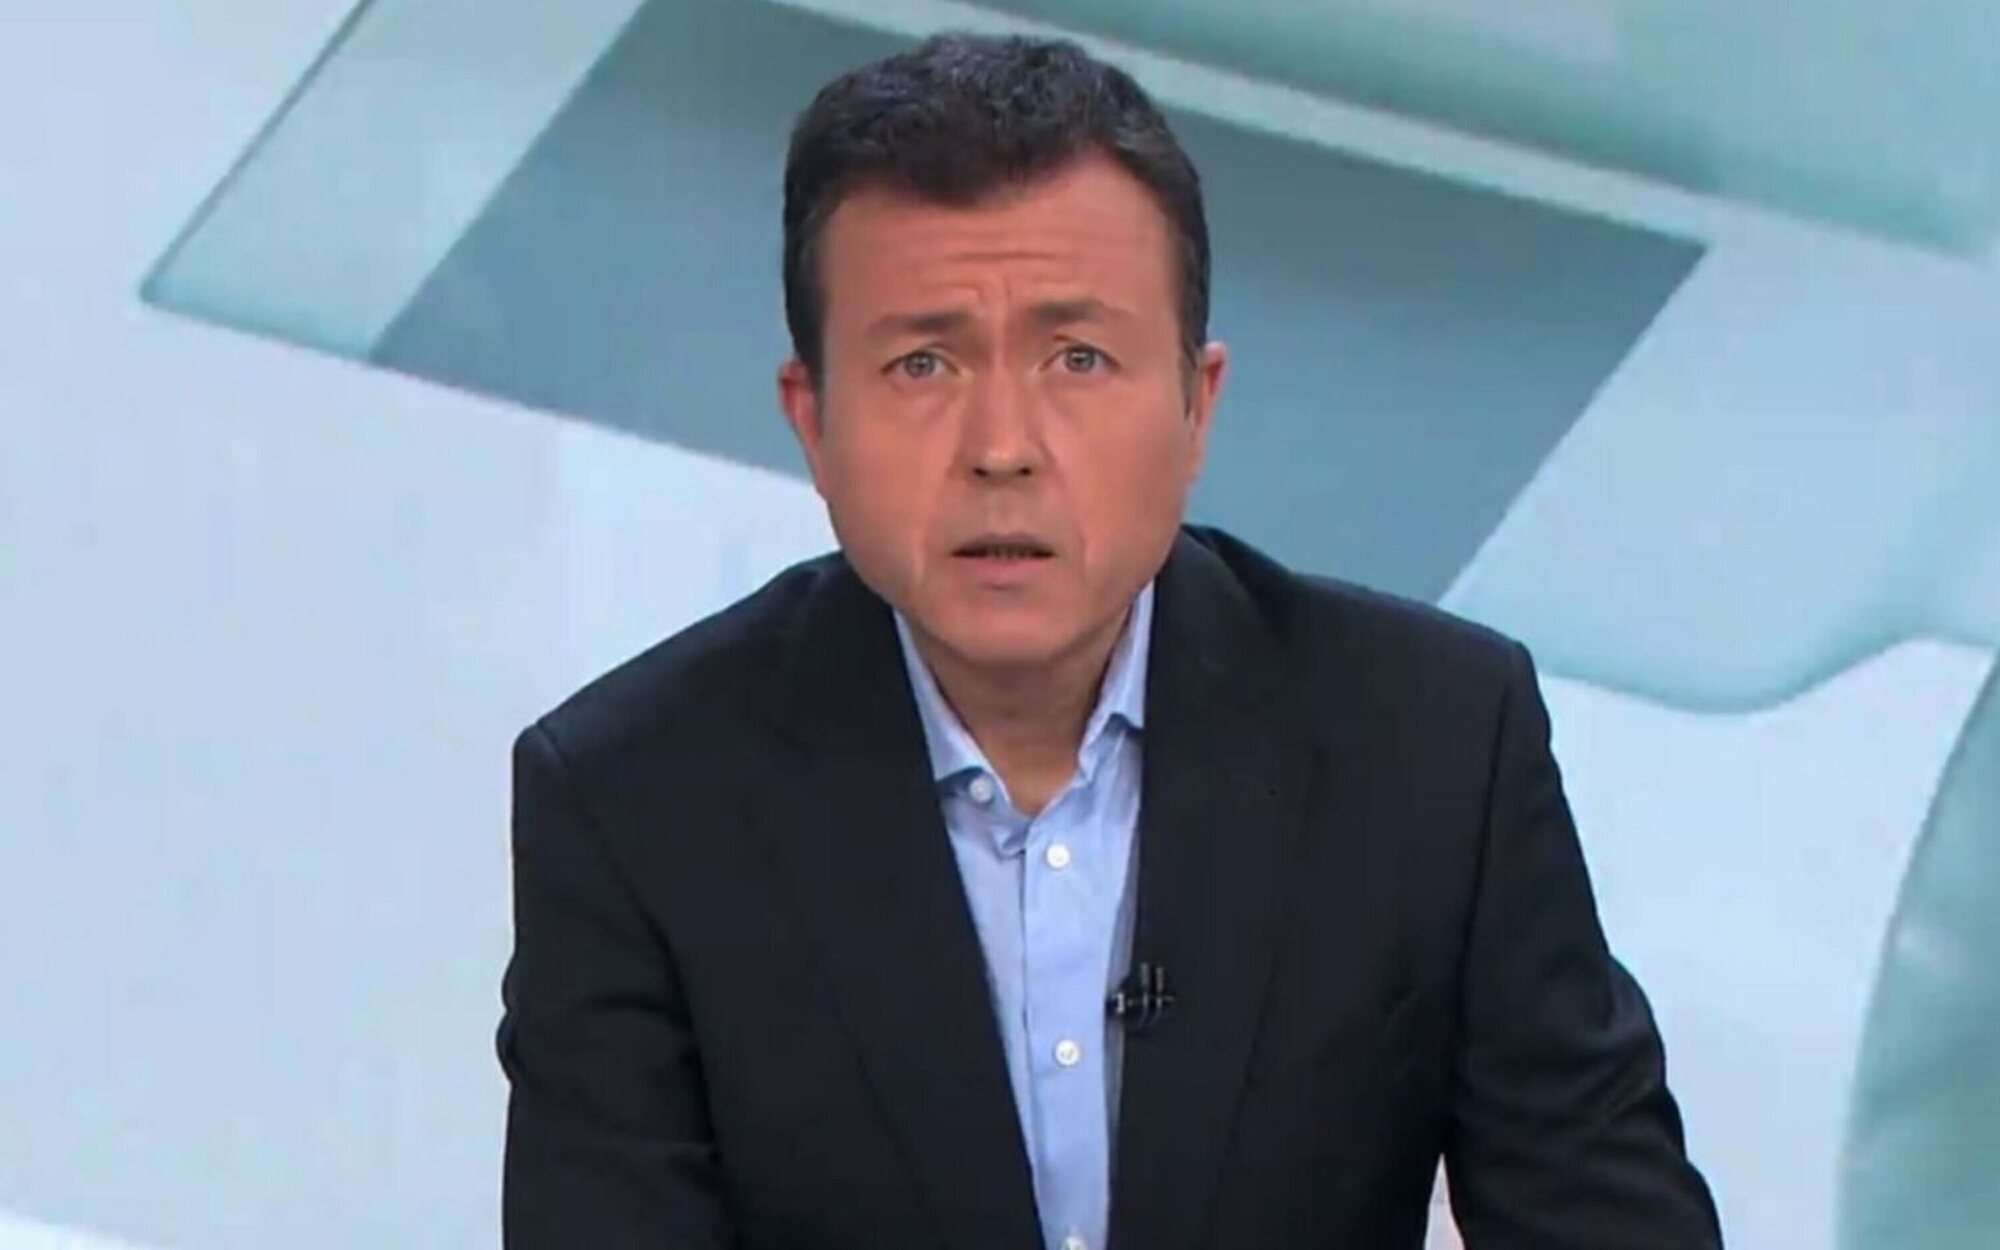 La criticada reflexión de Manu Sánchez en 'Antena 3 noticias' sobre la baja natalidad: "¿Son excusas?"